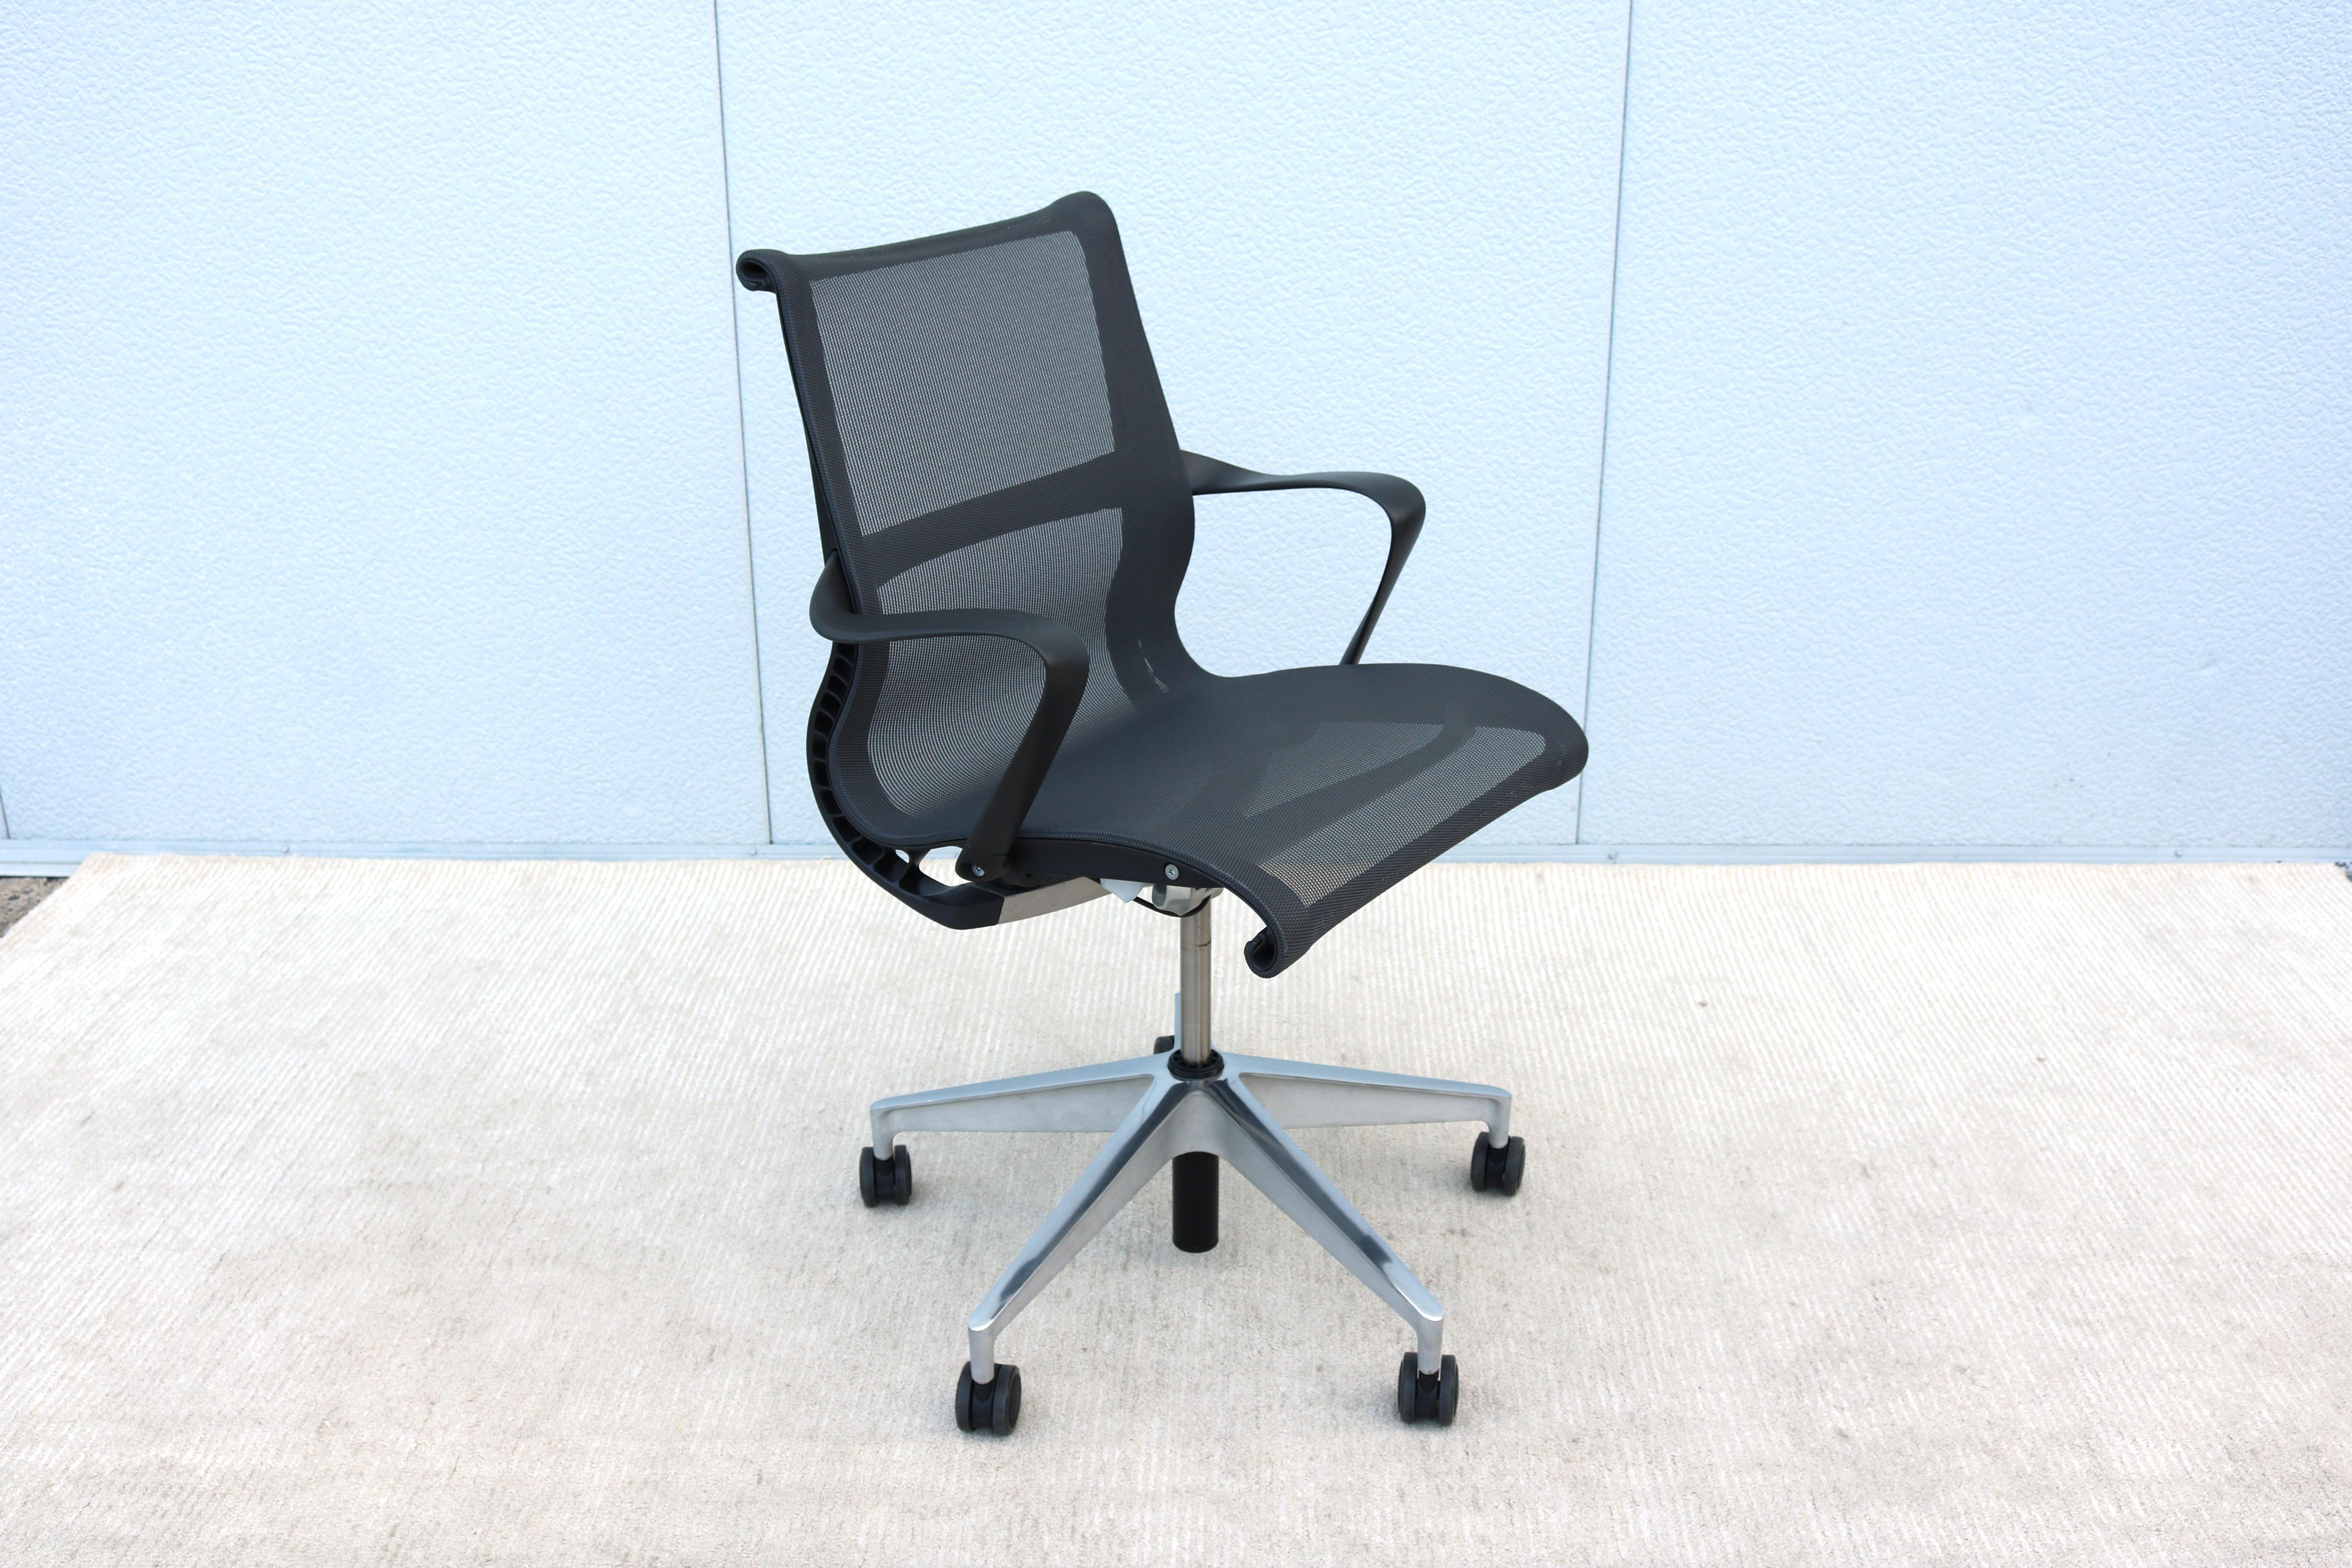 La chaise Setu offre un confort instantané dès l'instant où l'on s'assoit. Best of NeoCon Gold 2009.
Assise et dossier d'une seule pièce en tissu mesh respirant et souple, qui s'adapte à votre assise en vous apportant confort et aération.
Disposent